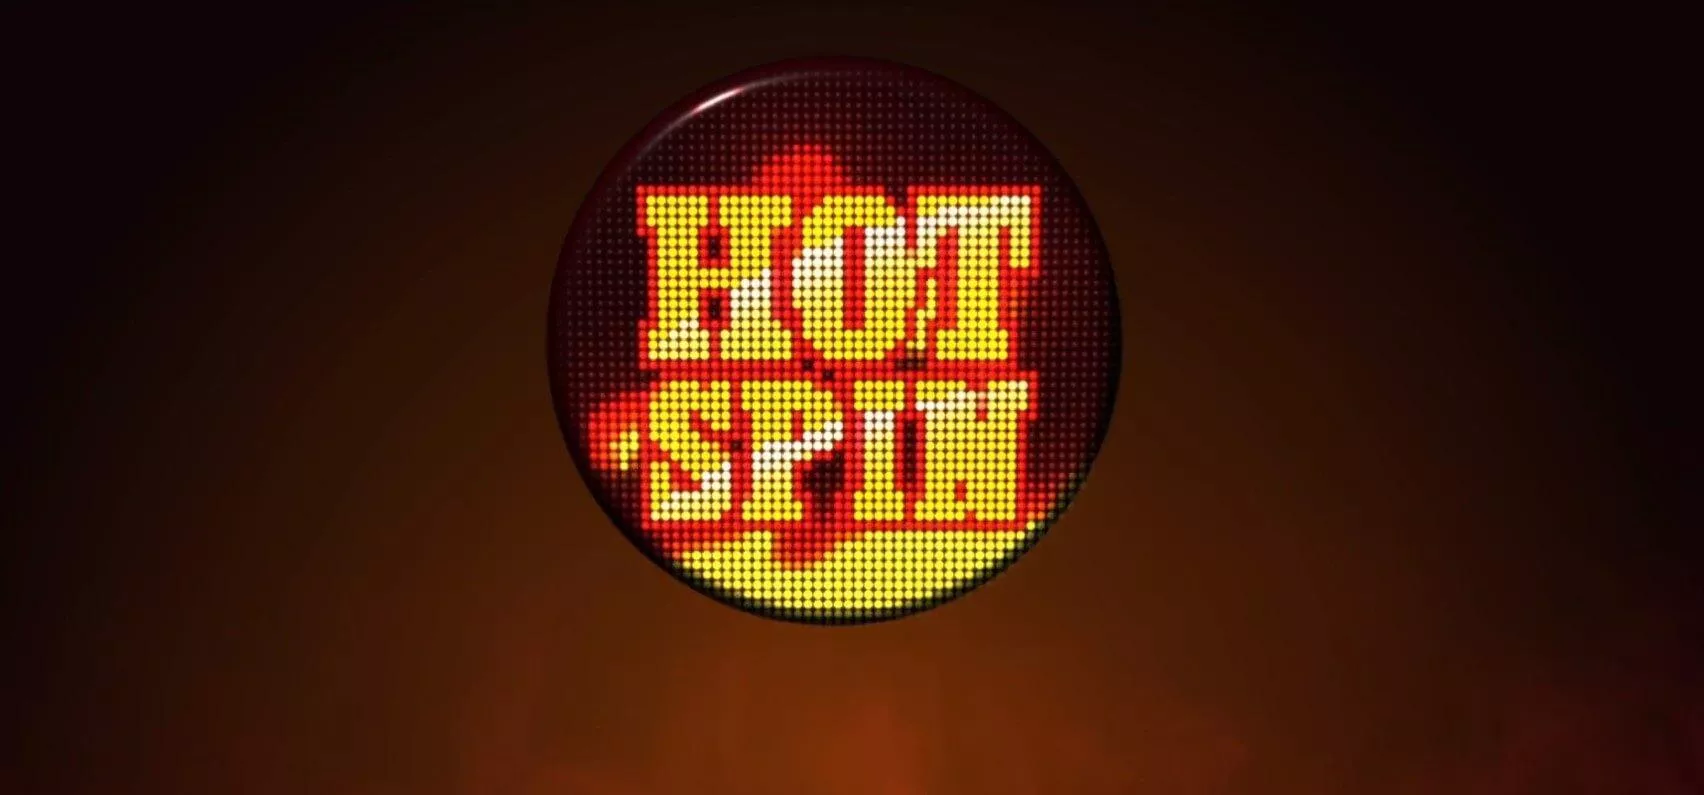 Hot Spin slot